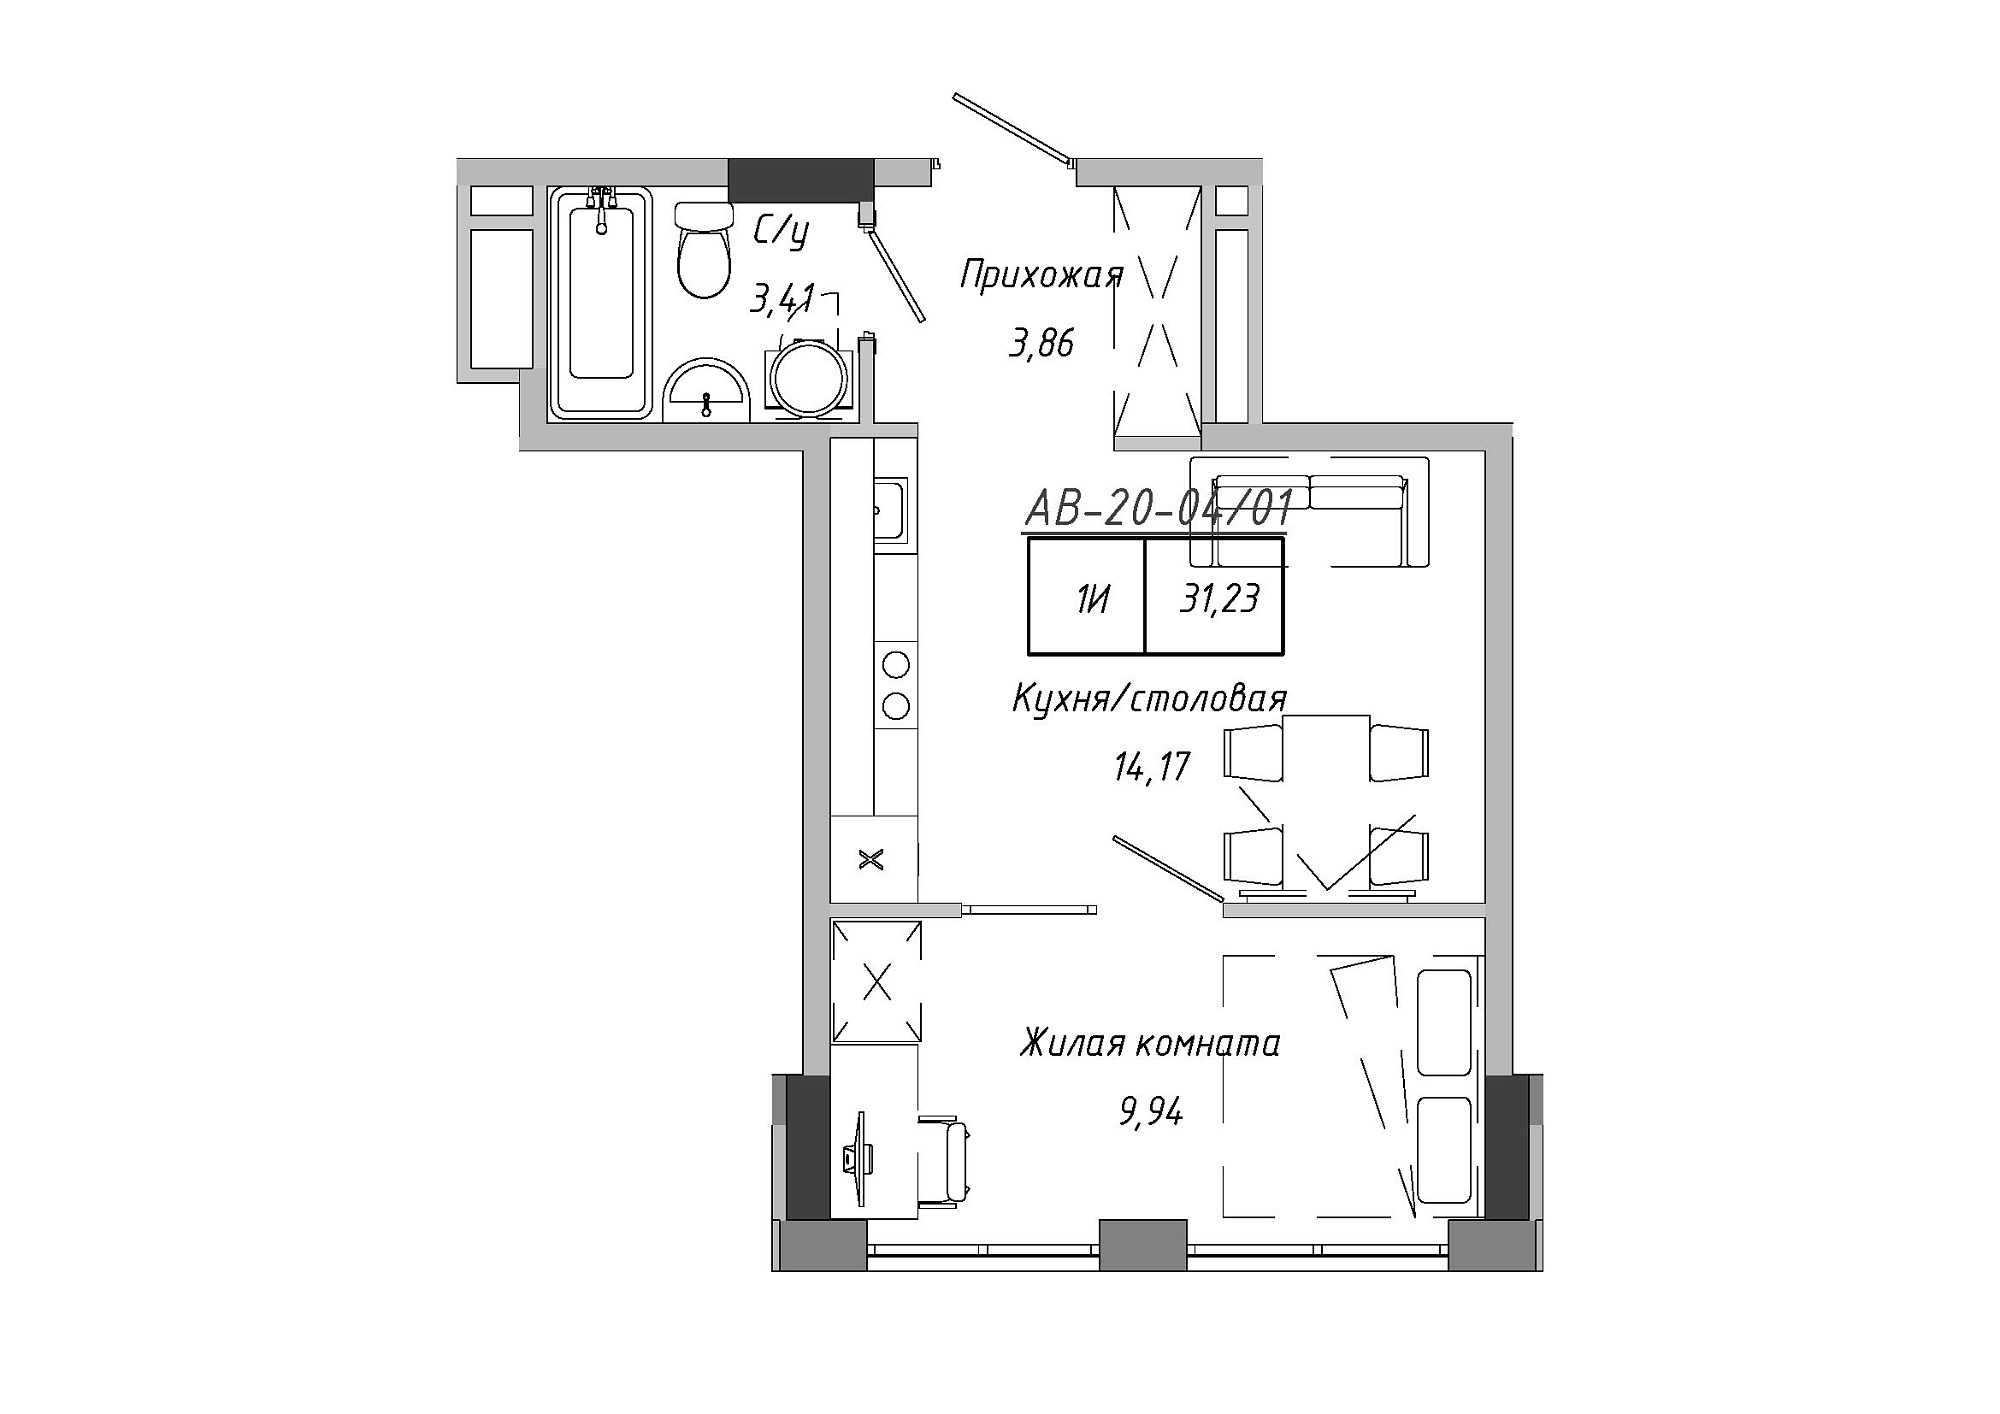 Планировка 1-к квартира площей 31.23м2, AB-20-04/00001.